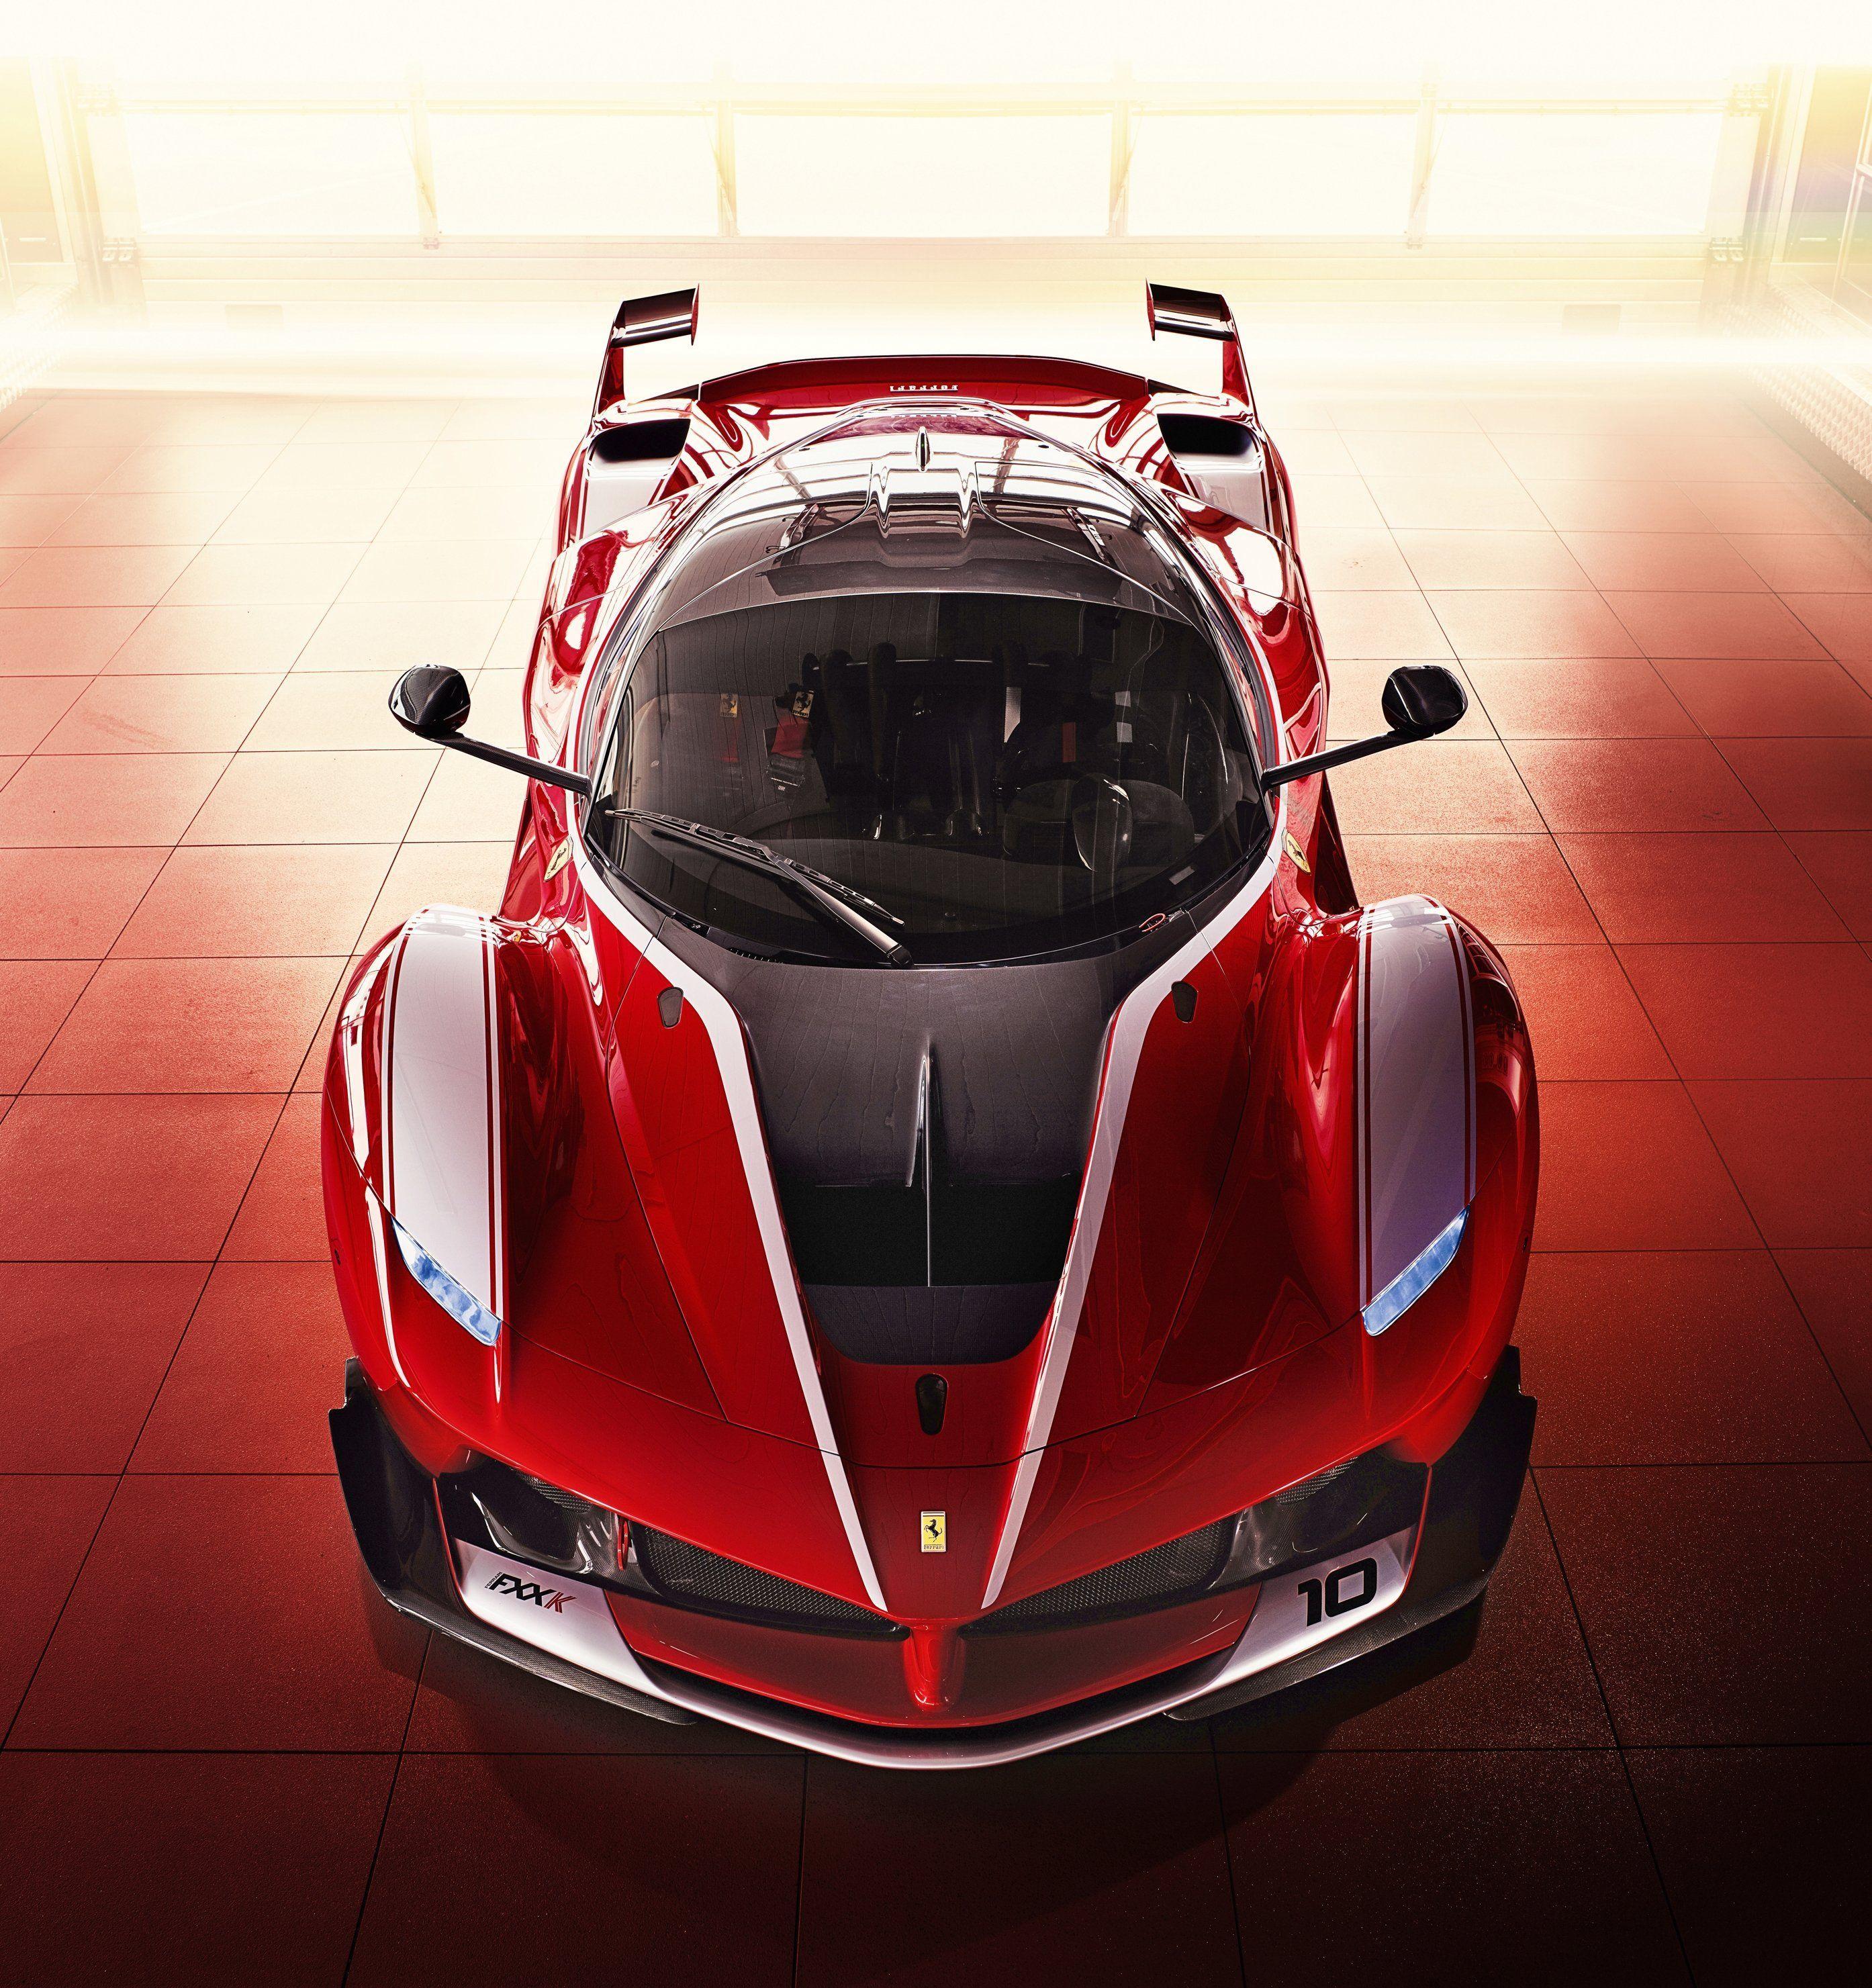 Ferrari Fxxk EVO Wallpapers - Top Free Ferrari Fxxk EVO Backgrounds ...